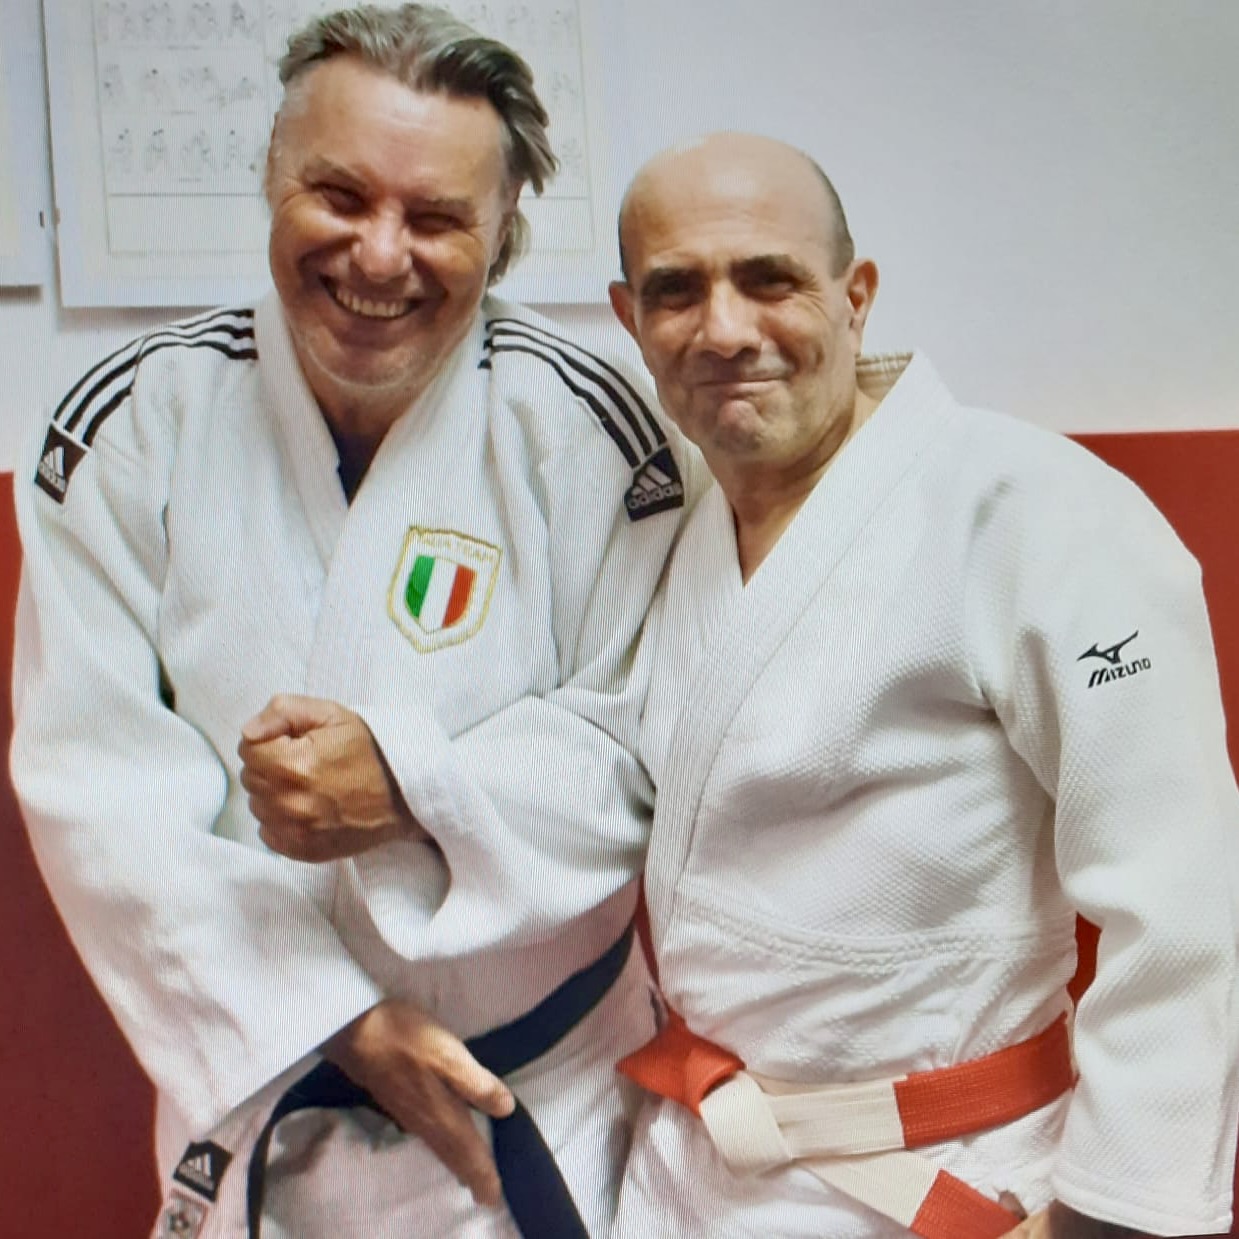 maestro Romano Sebenello, ex atleta gruppo sportivo carabinieri